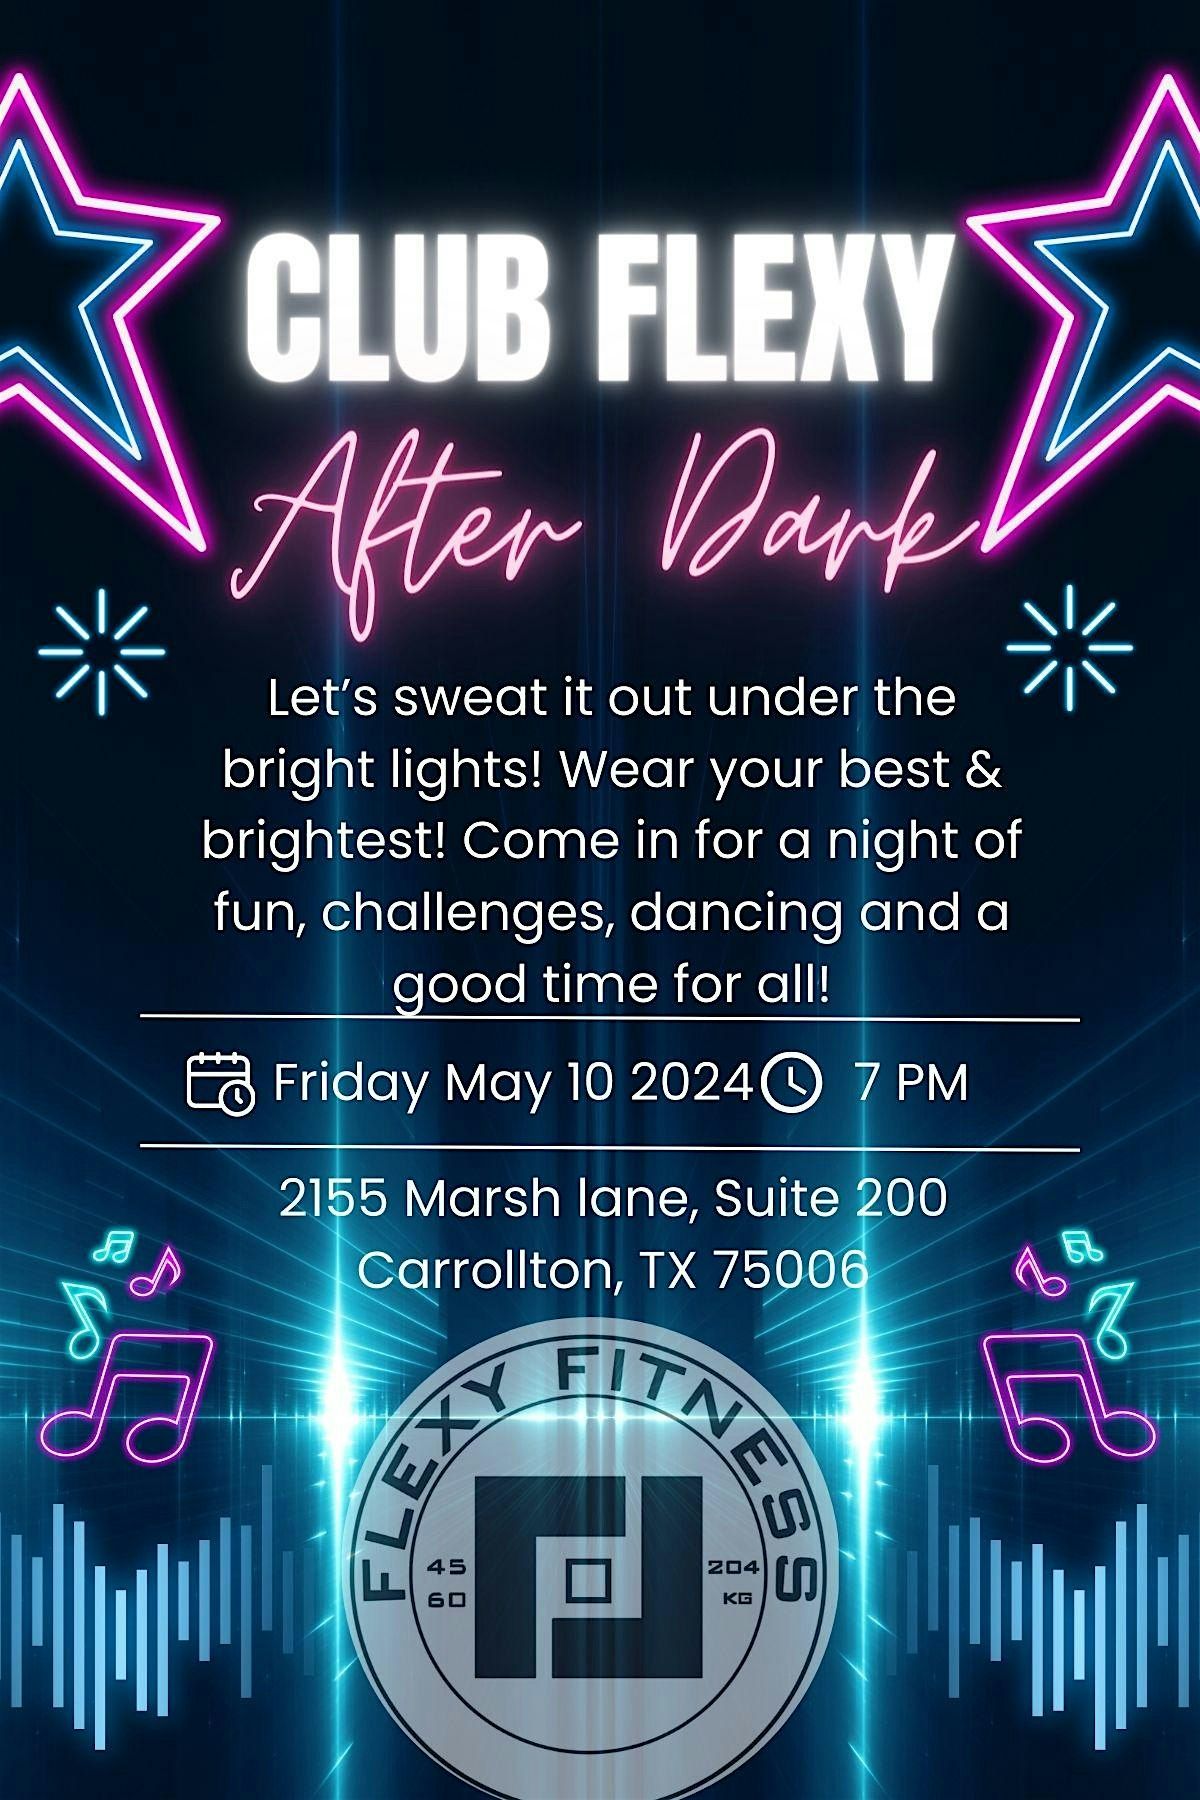 Club Flexy After Dark